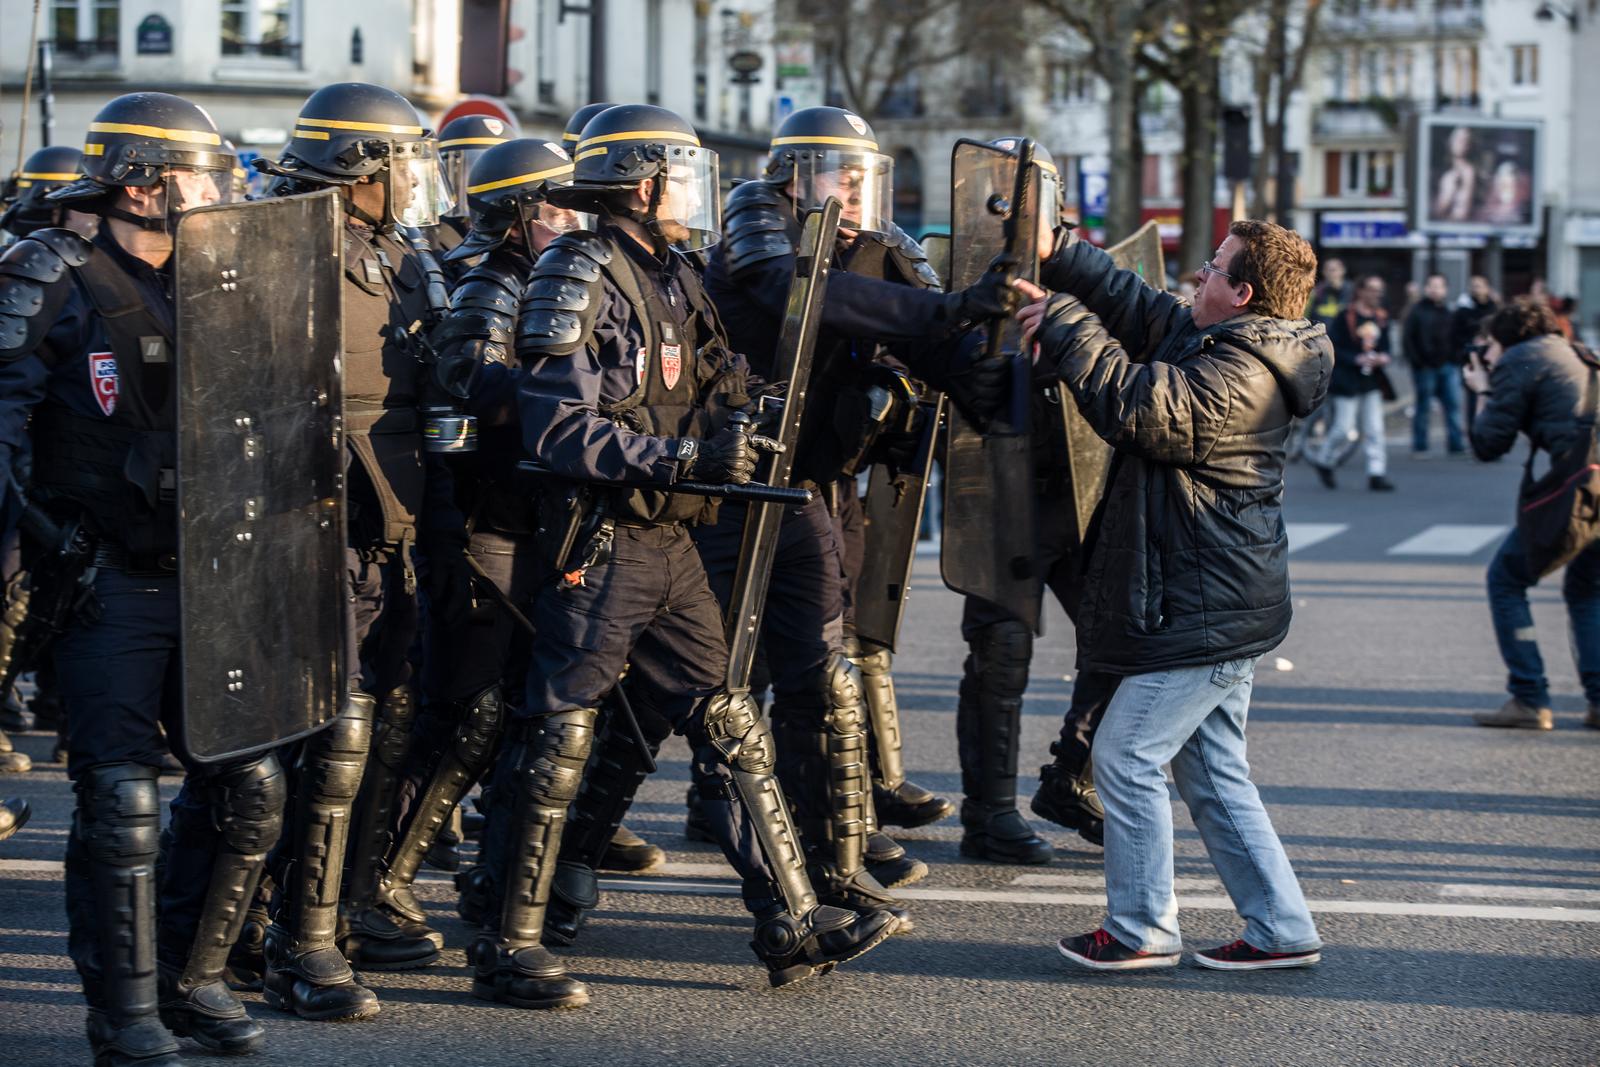 Photographe Paris - Affrontements CRS place de la Nation 1er mai